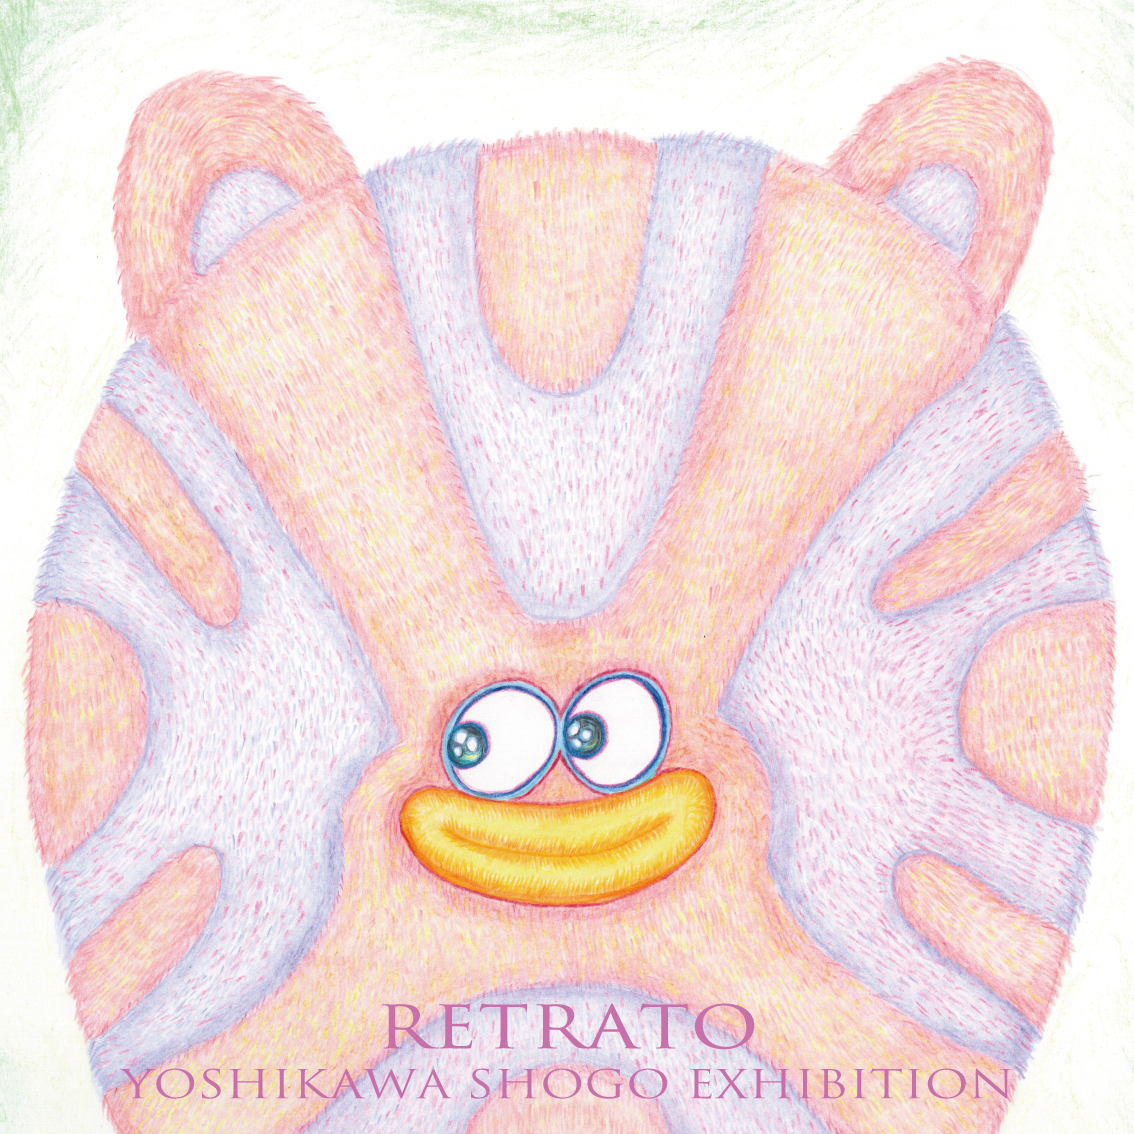 YOSHIKAWA SHOGO EXHIBITION 『RETRATO』